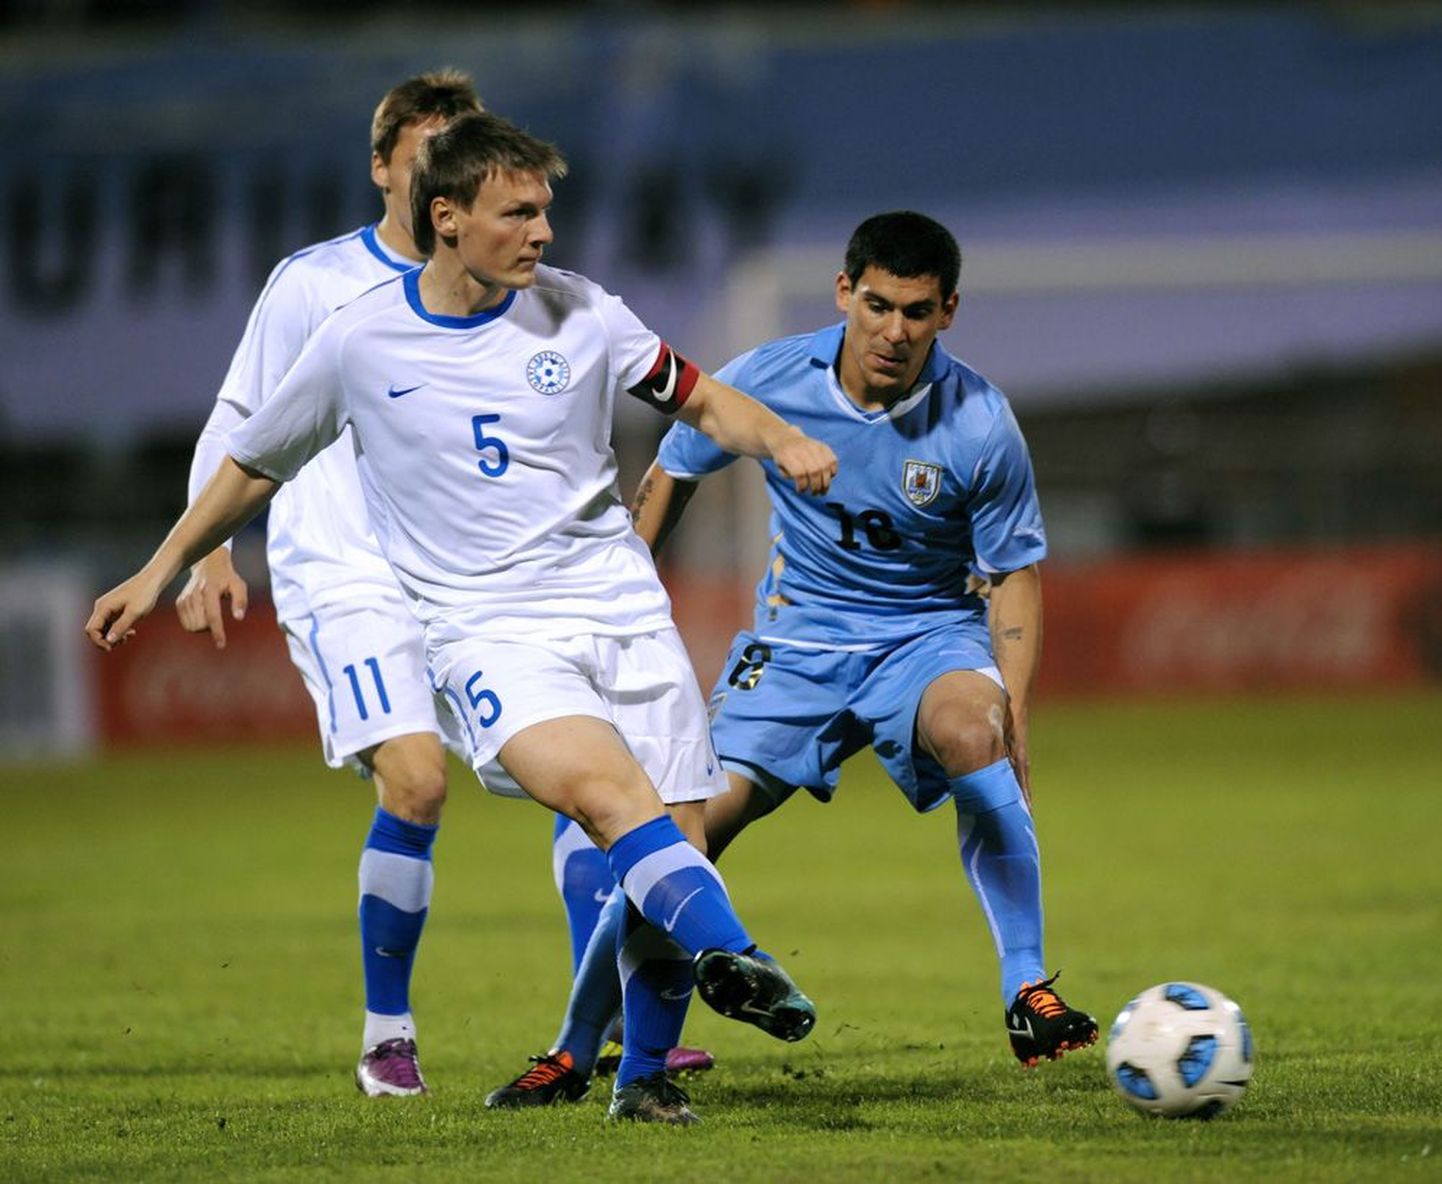 Lõuna-Ameerika turneel Eesti koondise kaptenipaela kandnud Dmitri Kruglov tegi karjääris väärika sammu edasi. Kruglov loodab, et saab FC Rostovis stabiilselt mänguaega.